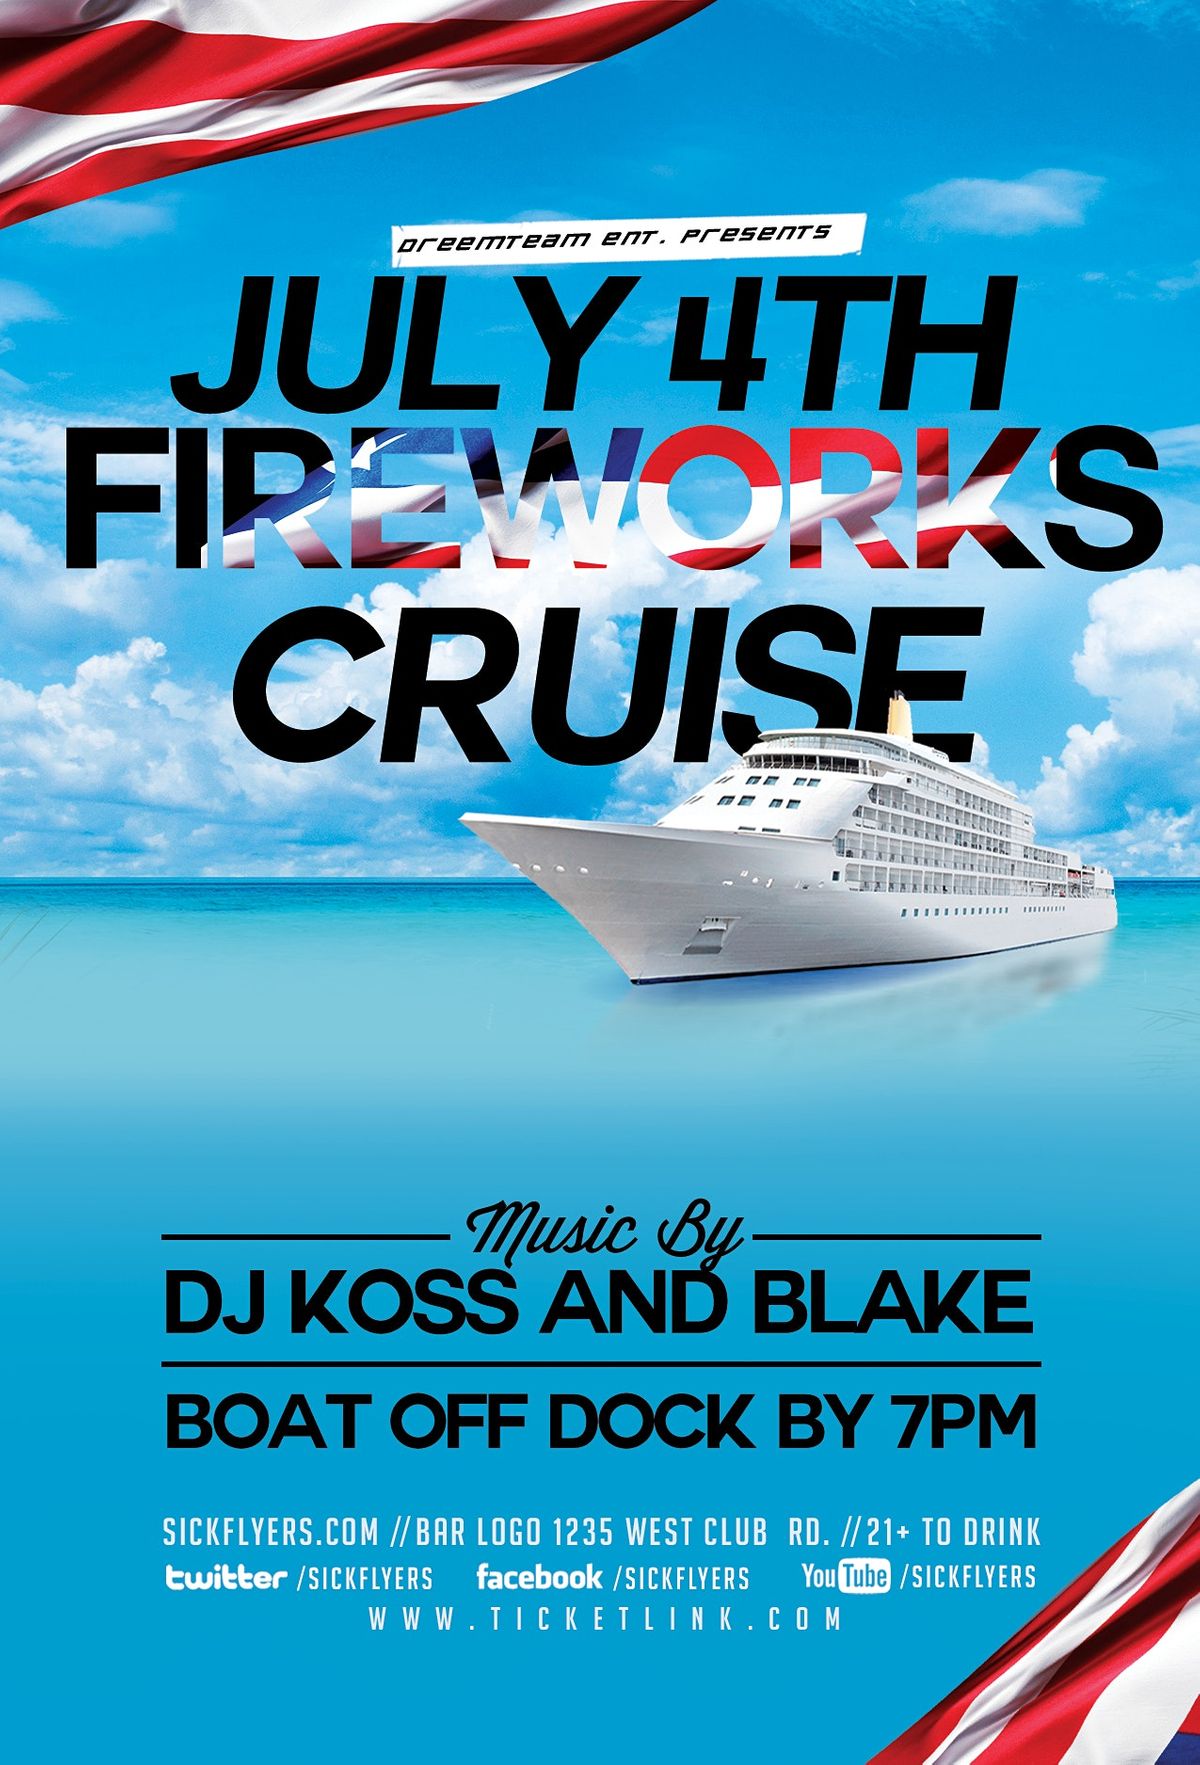 NYC 4th of July Fireworks Cruise! Skyport Marina, New York, NY July